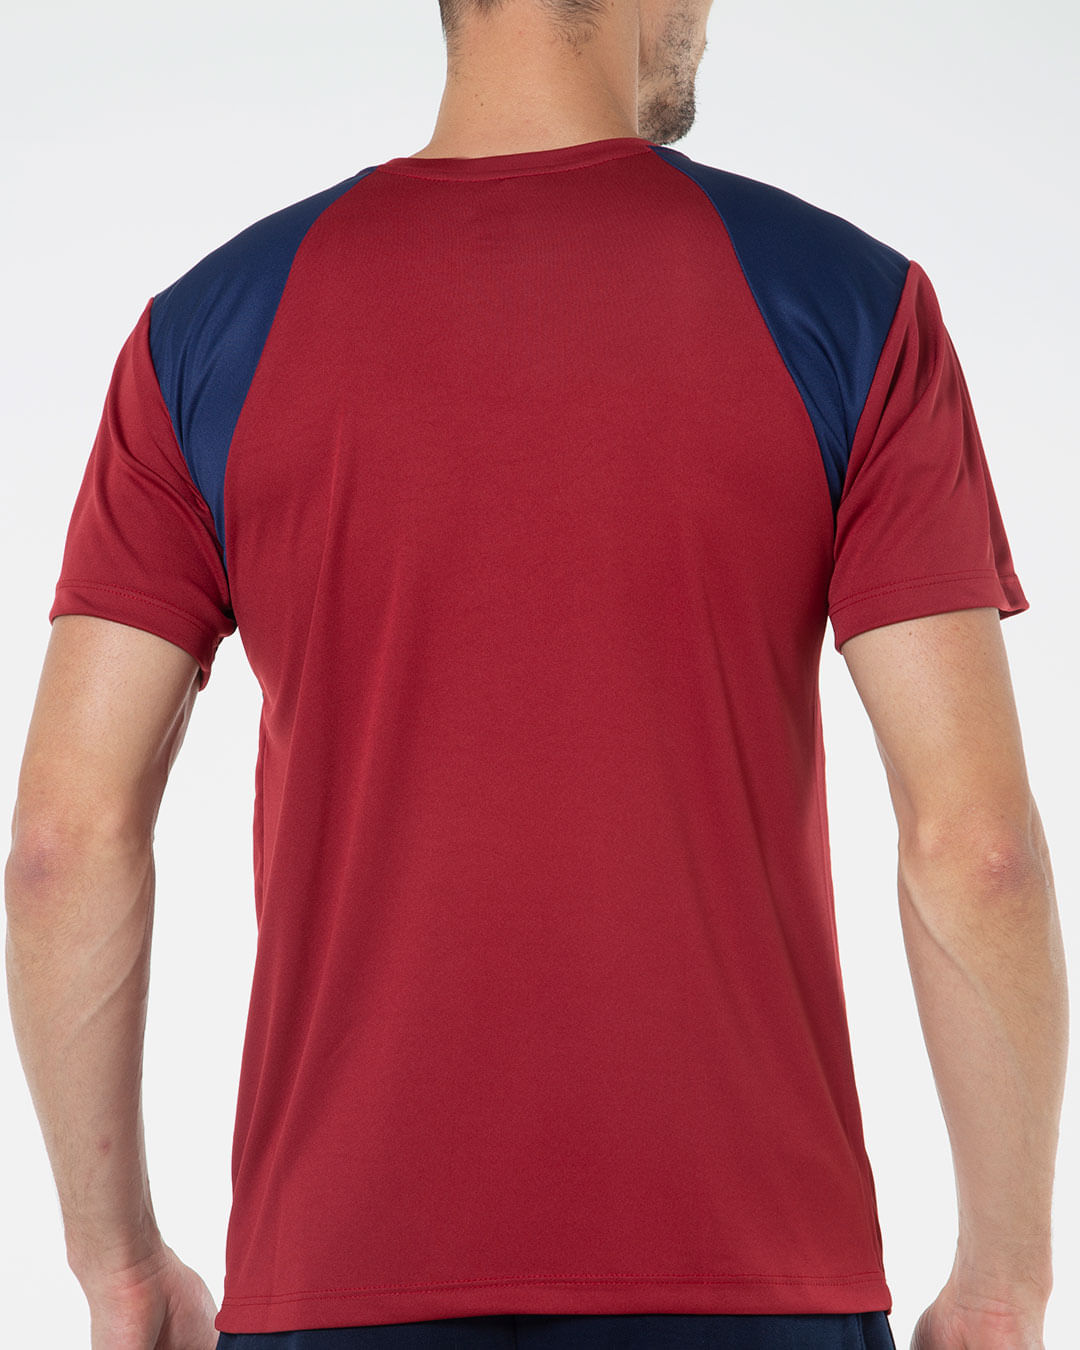 Camisa-Masculina-Recorte-Ombro-Vermelha